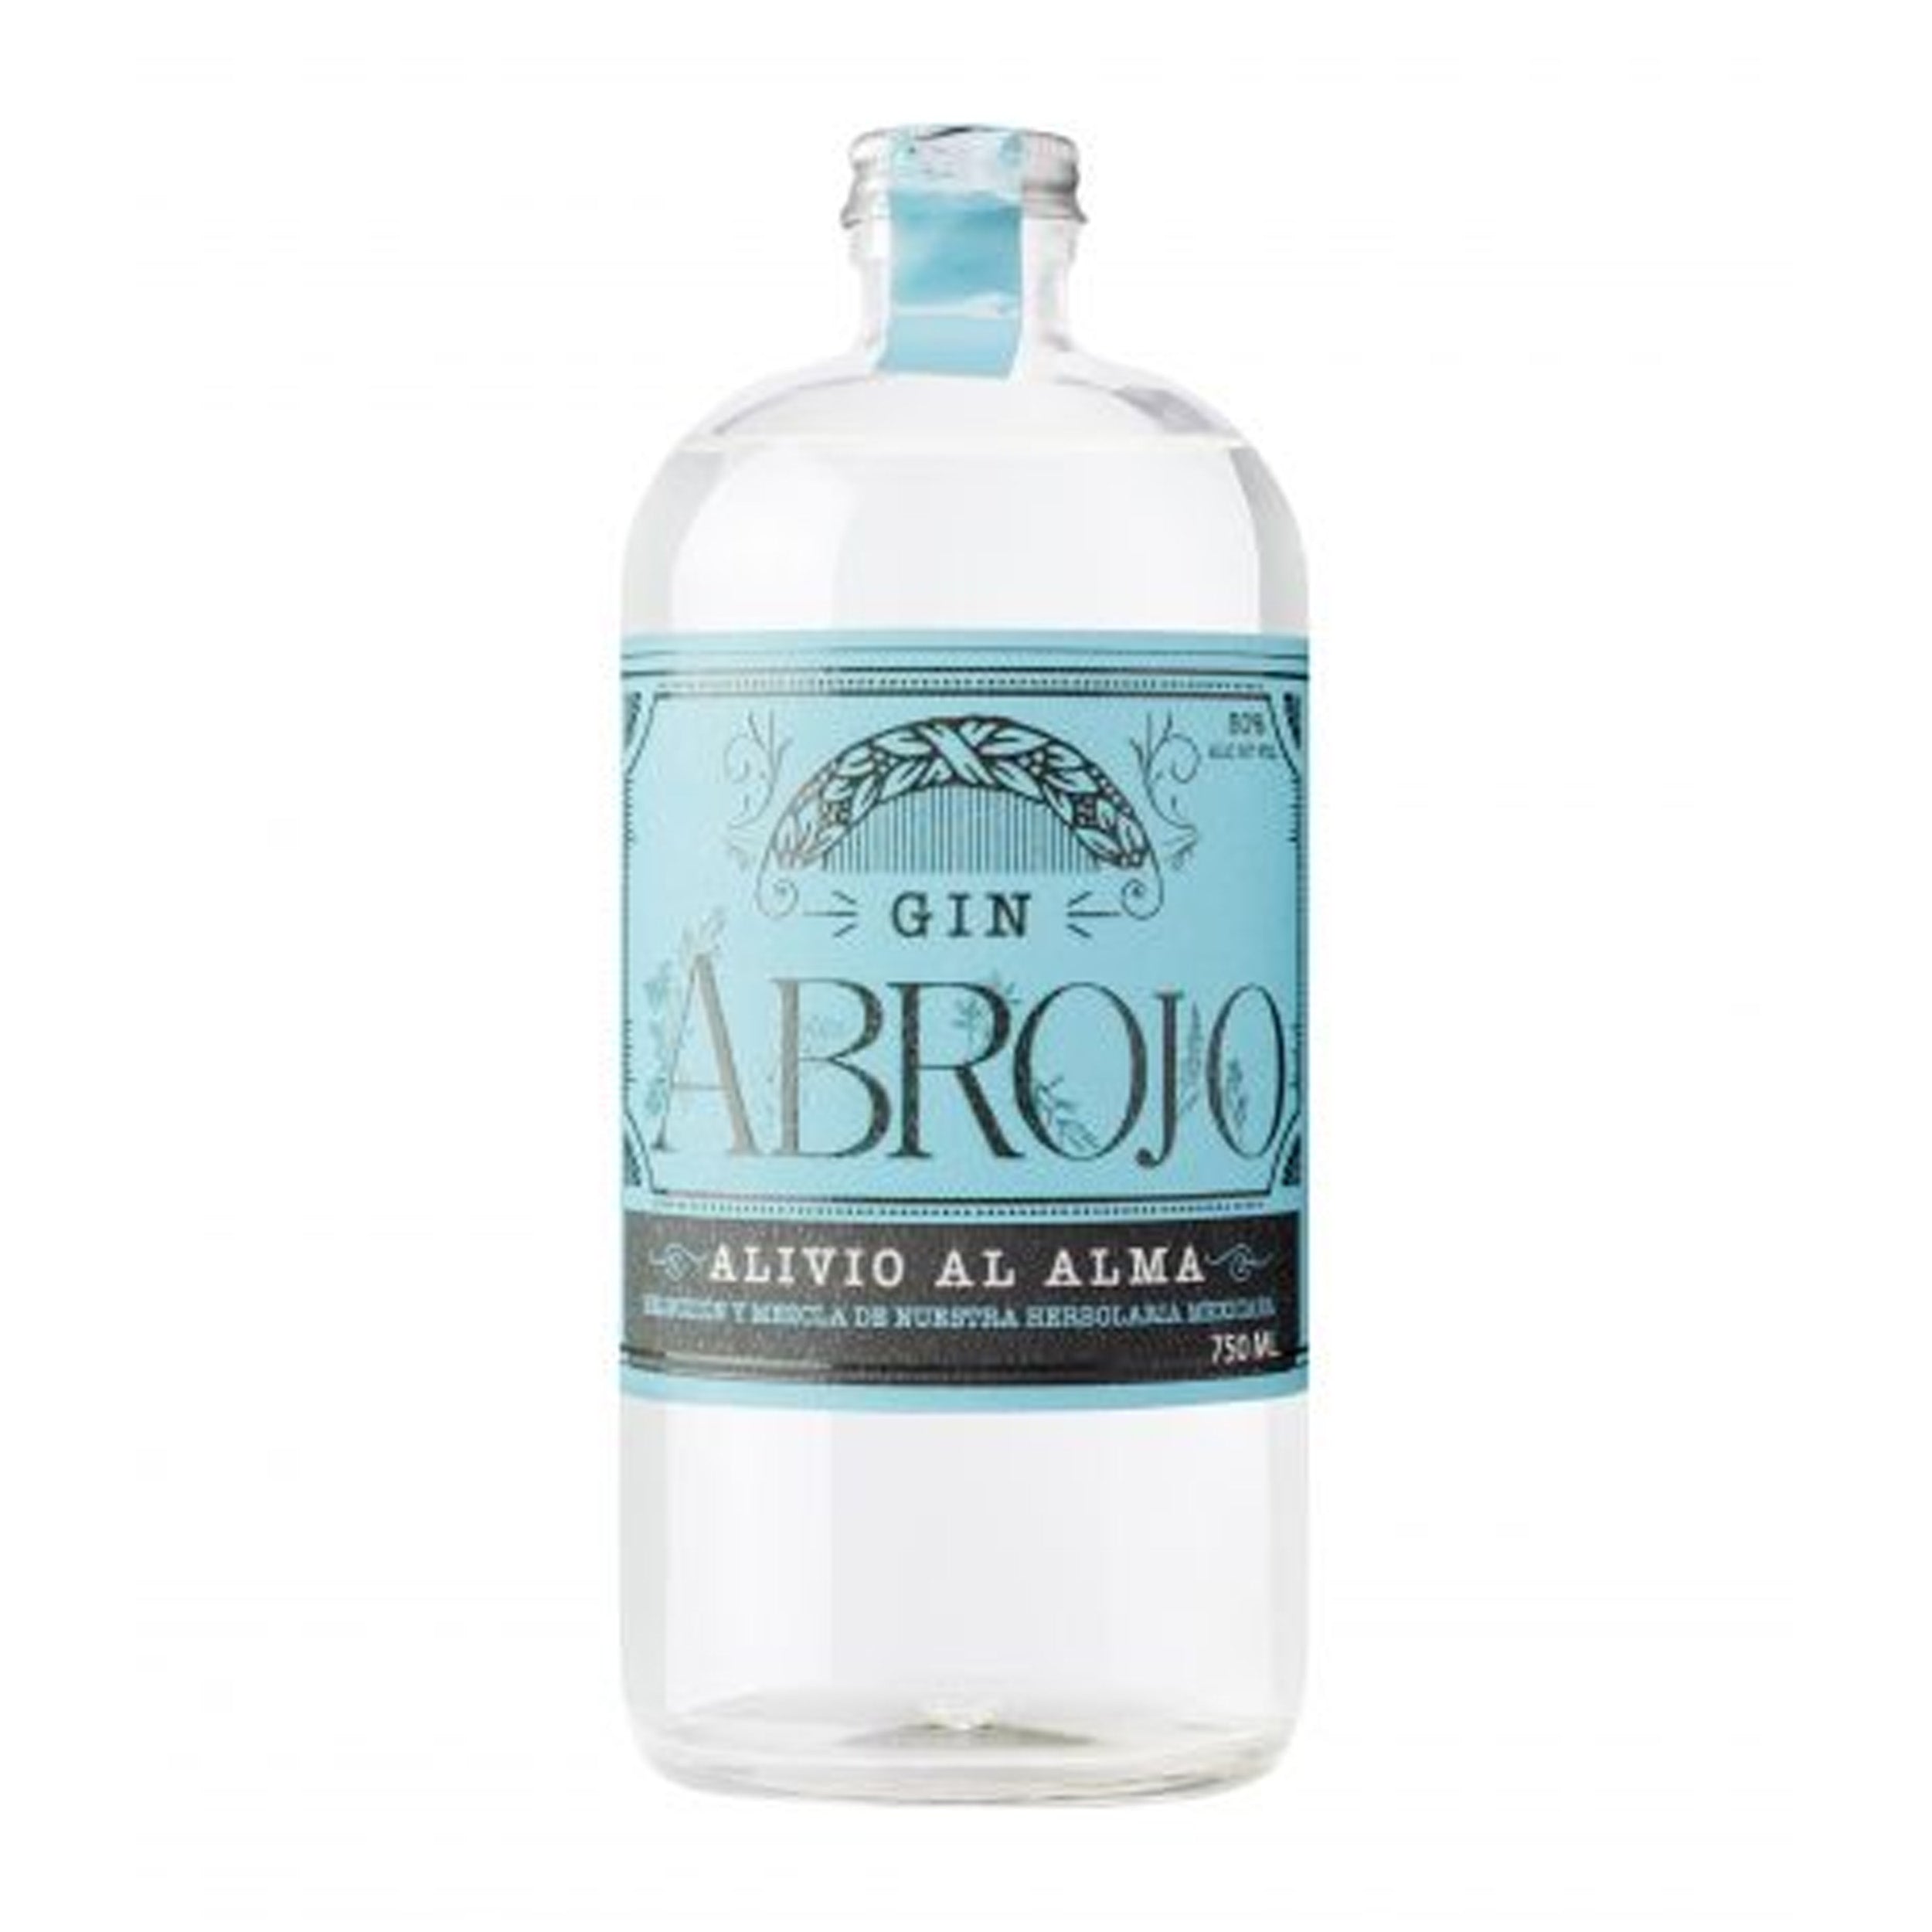 Abrojo Gin Alivio Al Alma Gin Blue Label